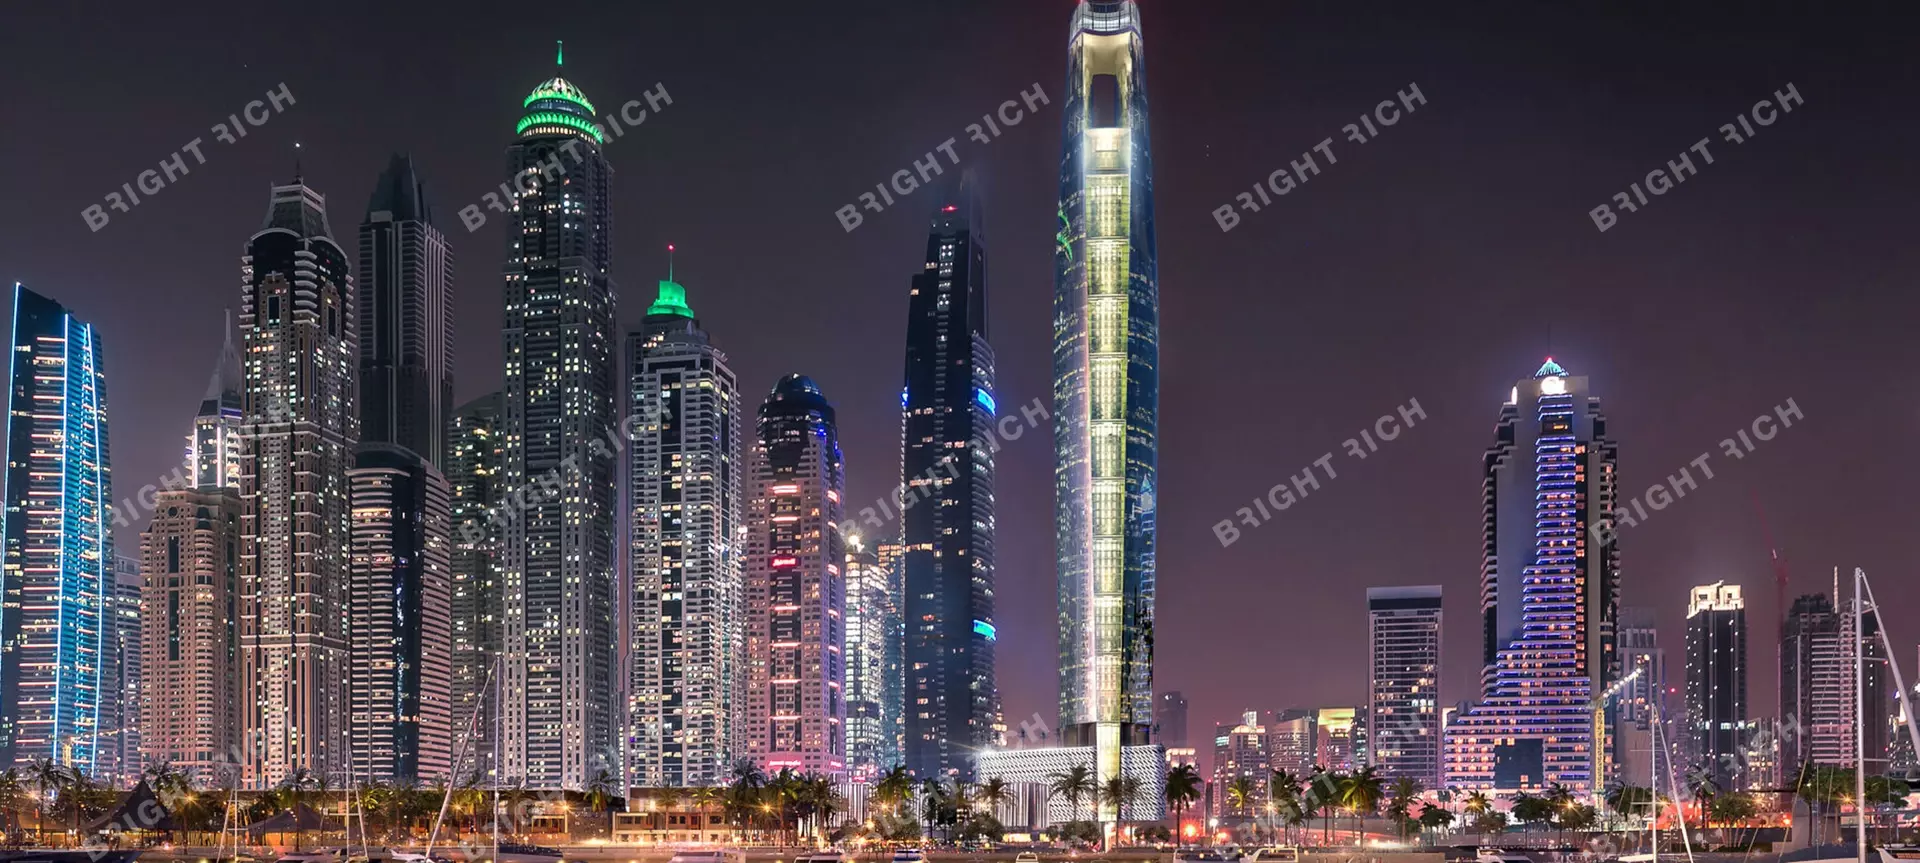 Ciel, апарт-комплекс в Дубае